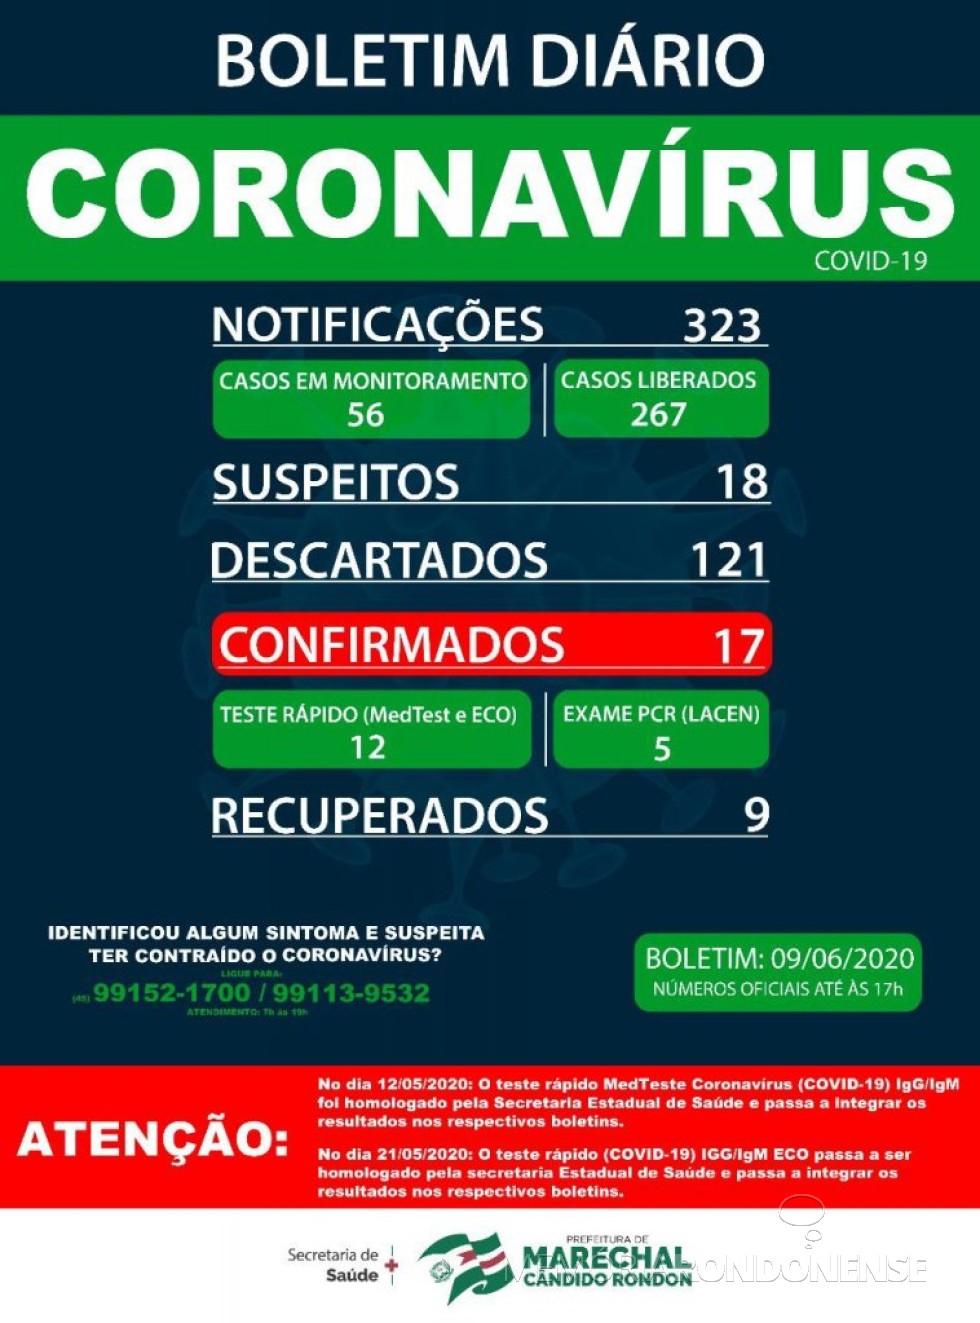 Boletim da Secretaria de Saúde de Marechal Cãndido Rondon registrando o aumento dos positivados para o COVID 19 no município.
Imagem: Acervo Imprensa PM-MCR - FOTO 11 - 